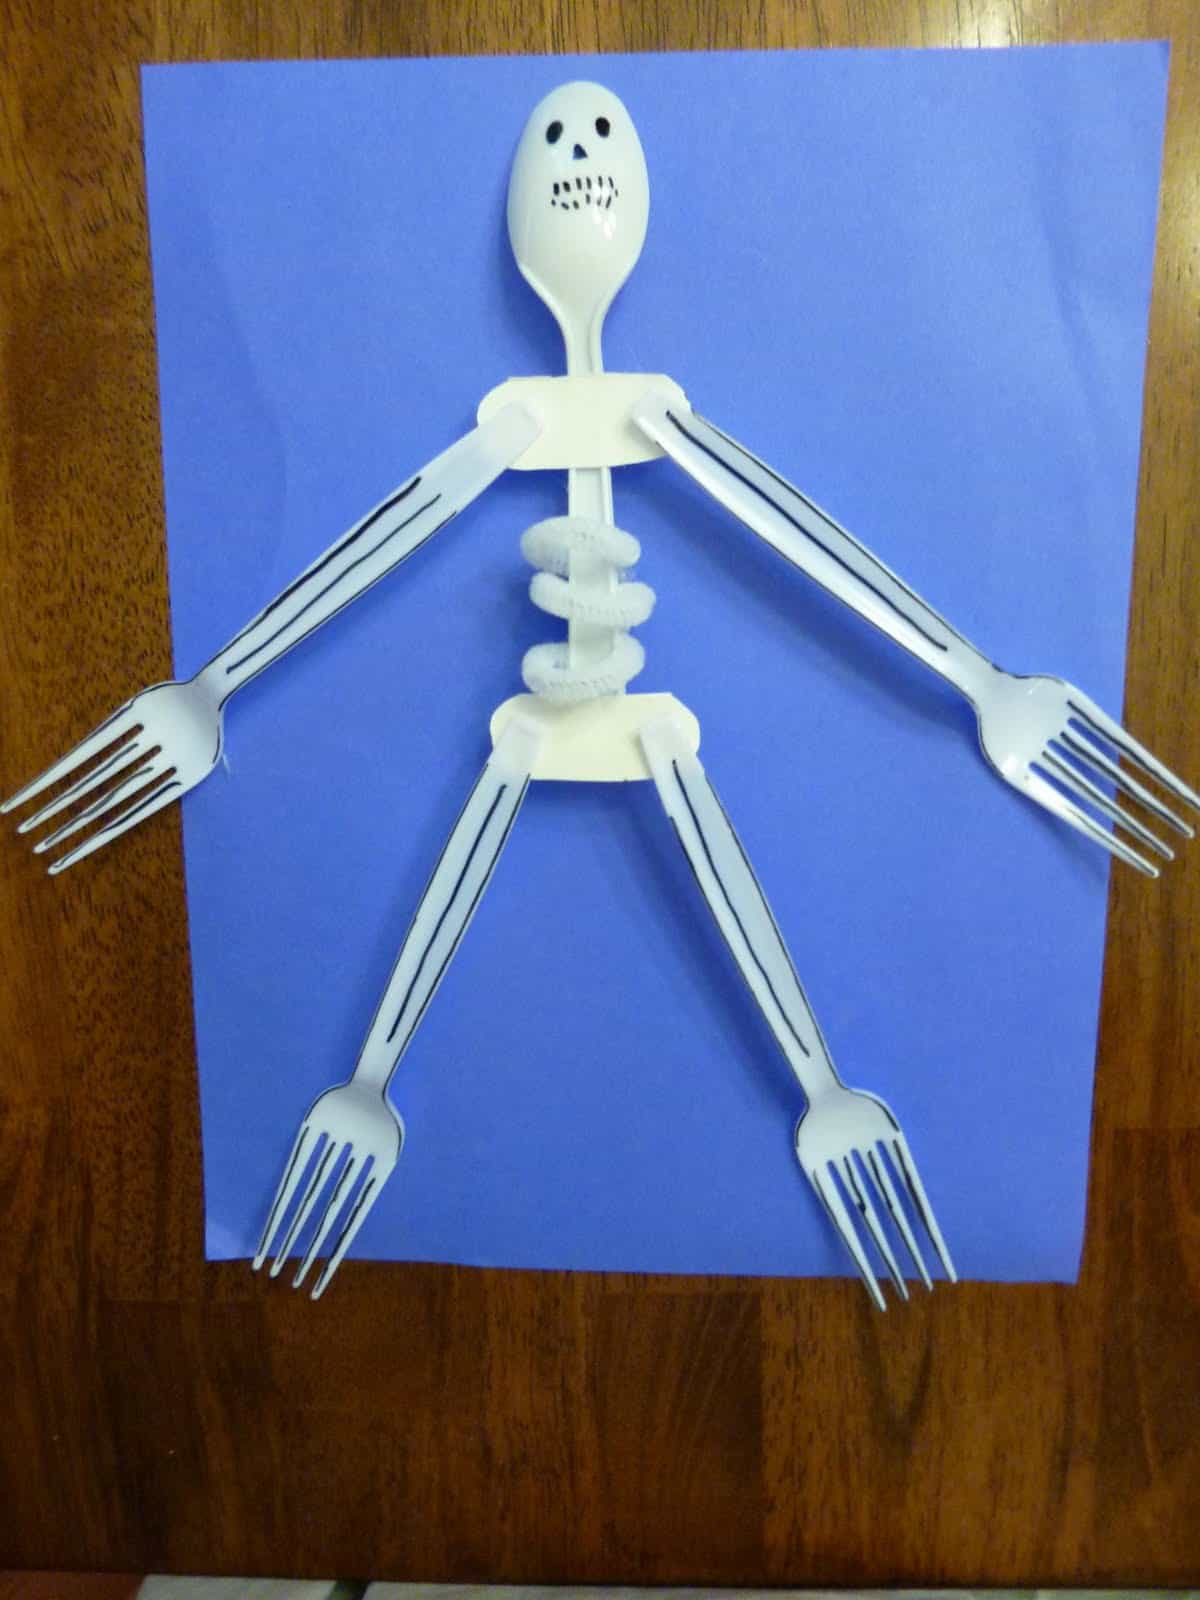 Plastic fork skeleton craft